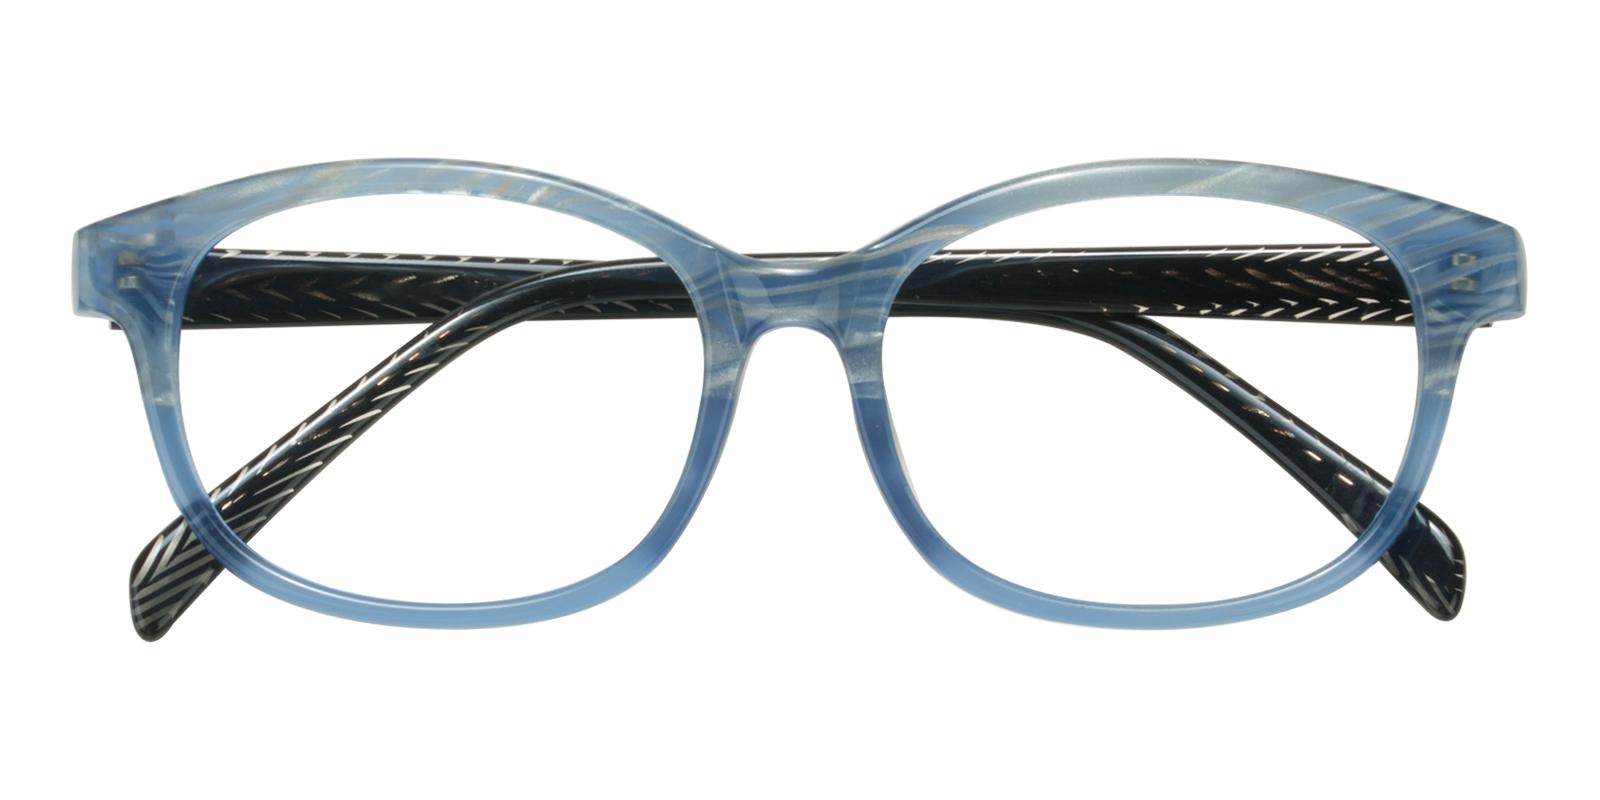 Plumer Blue Acetate Eyeglasses , UniversalBridgeFit Frames from ABBE Glasses